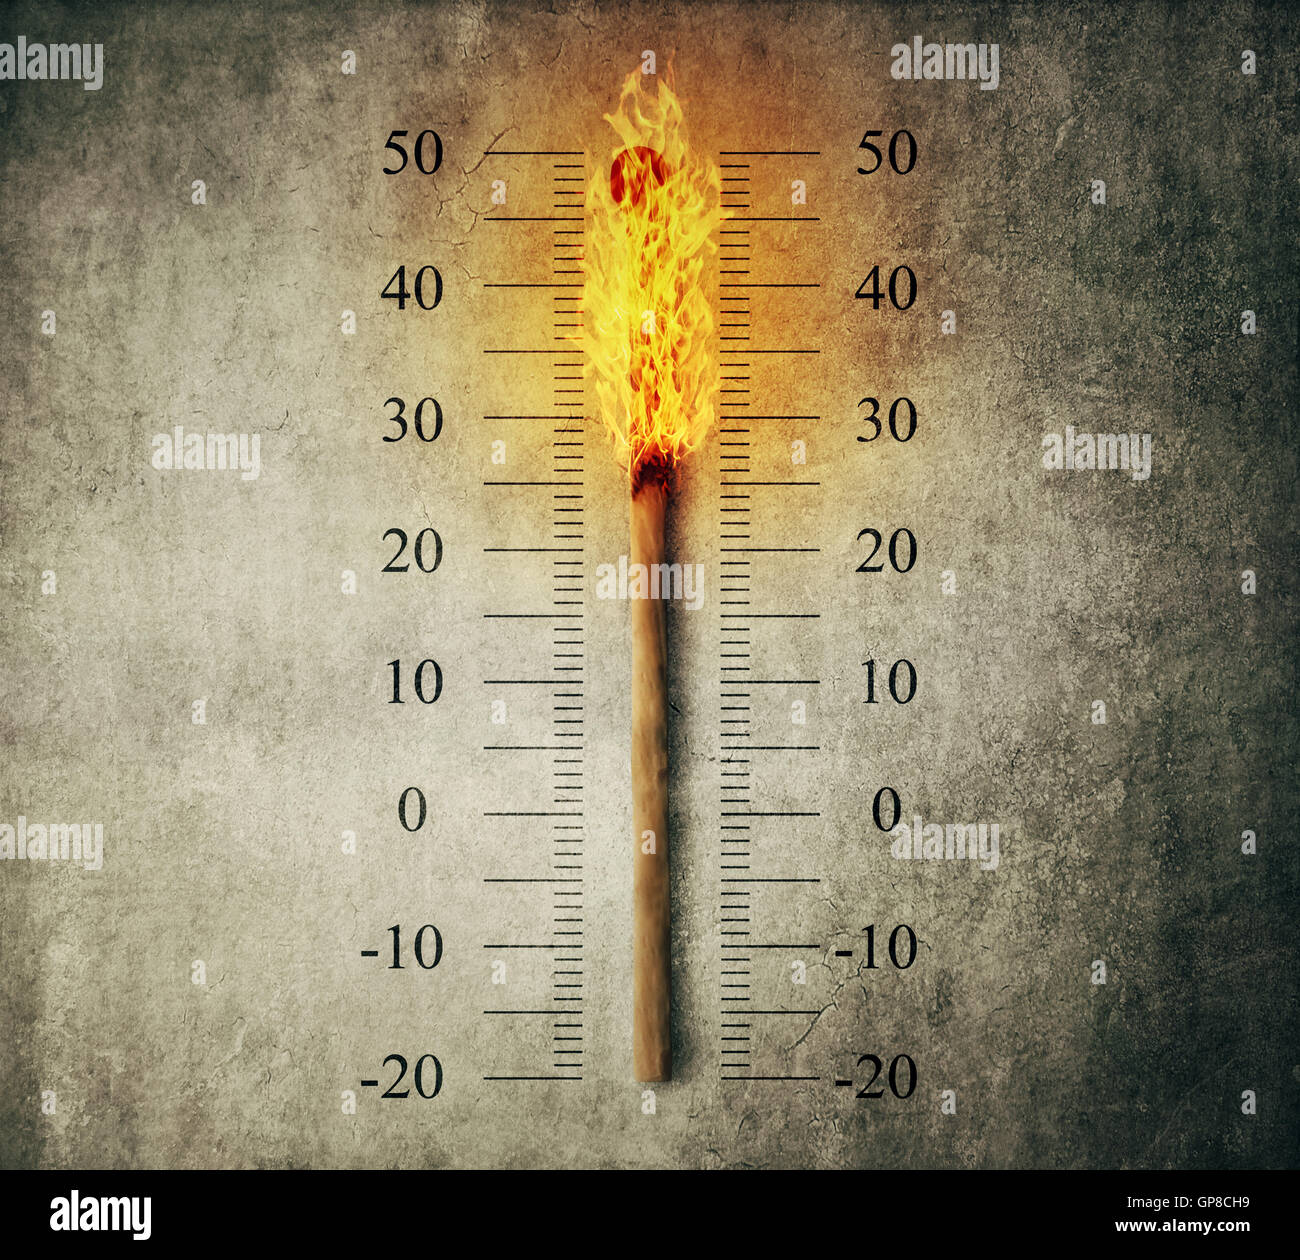 Bruciò match stick che indica la temperatura su una scala come un termometro. Il riscaldamento globale e aumento della temperatura concept Foto Stock